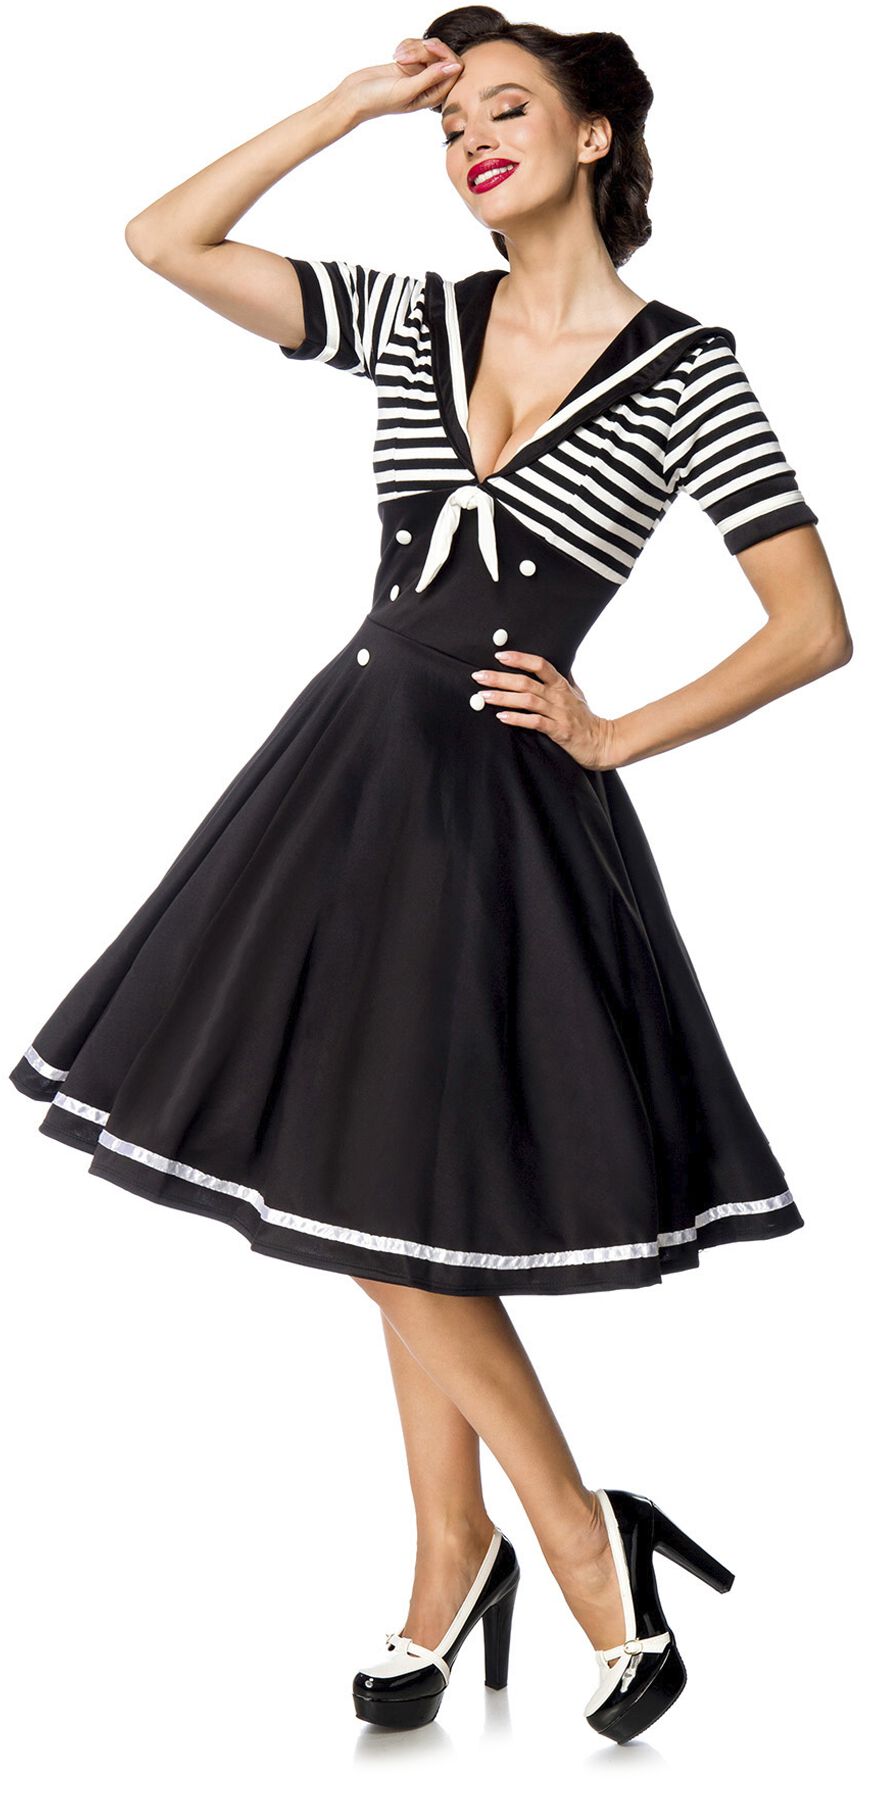 Belsira - Rockabilly Kleid knielang - Swing-Kleid im Marinelook - S bis 4XL - für Damen - Größe XL - schwarz/weiß